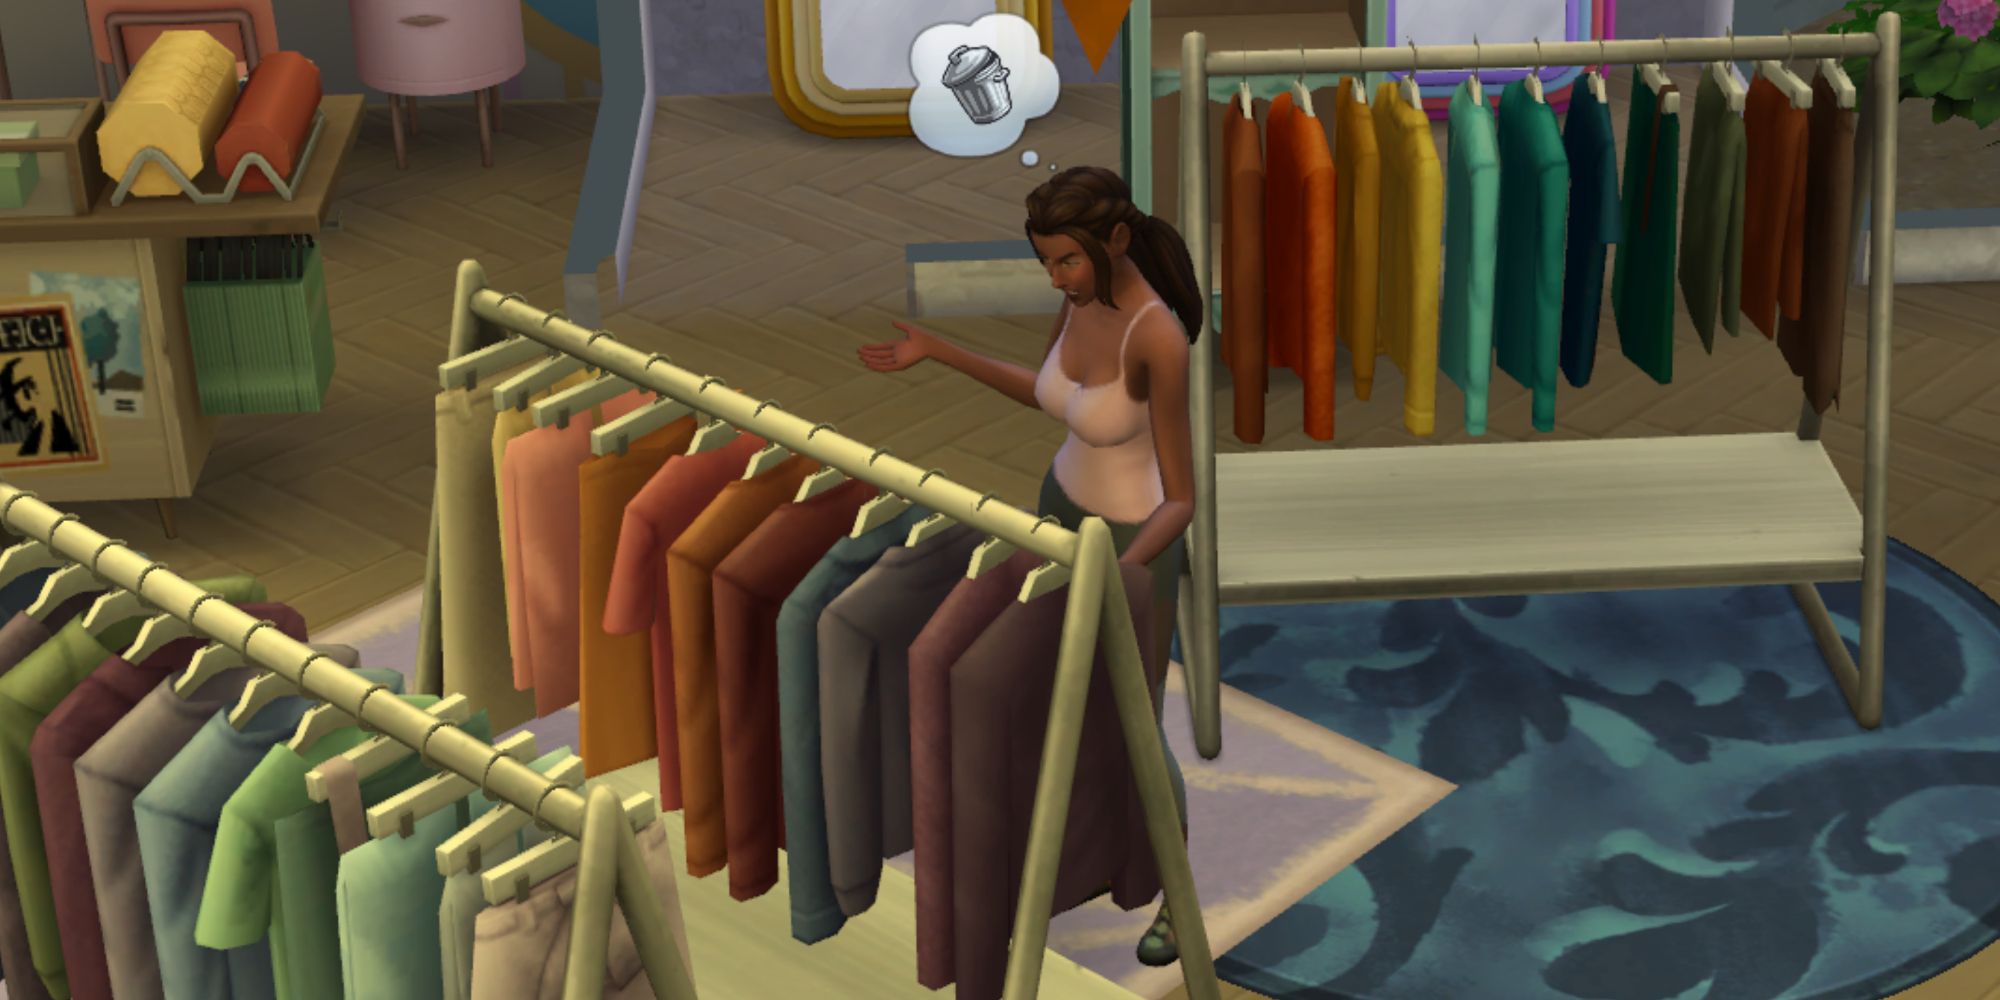 sim looking at clothes